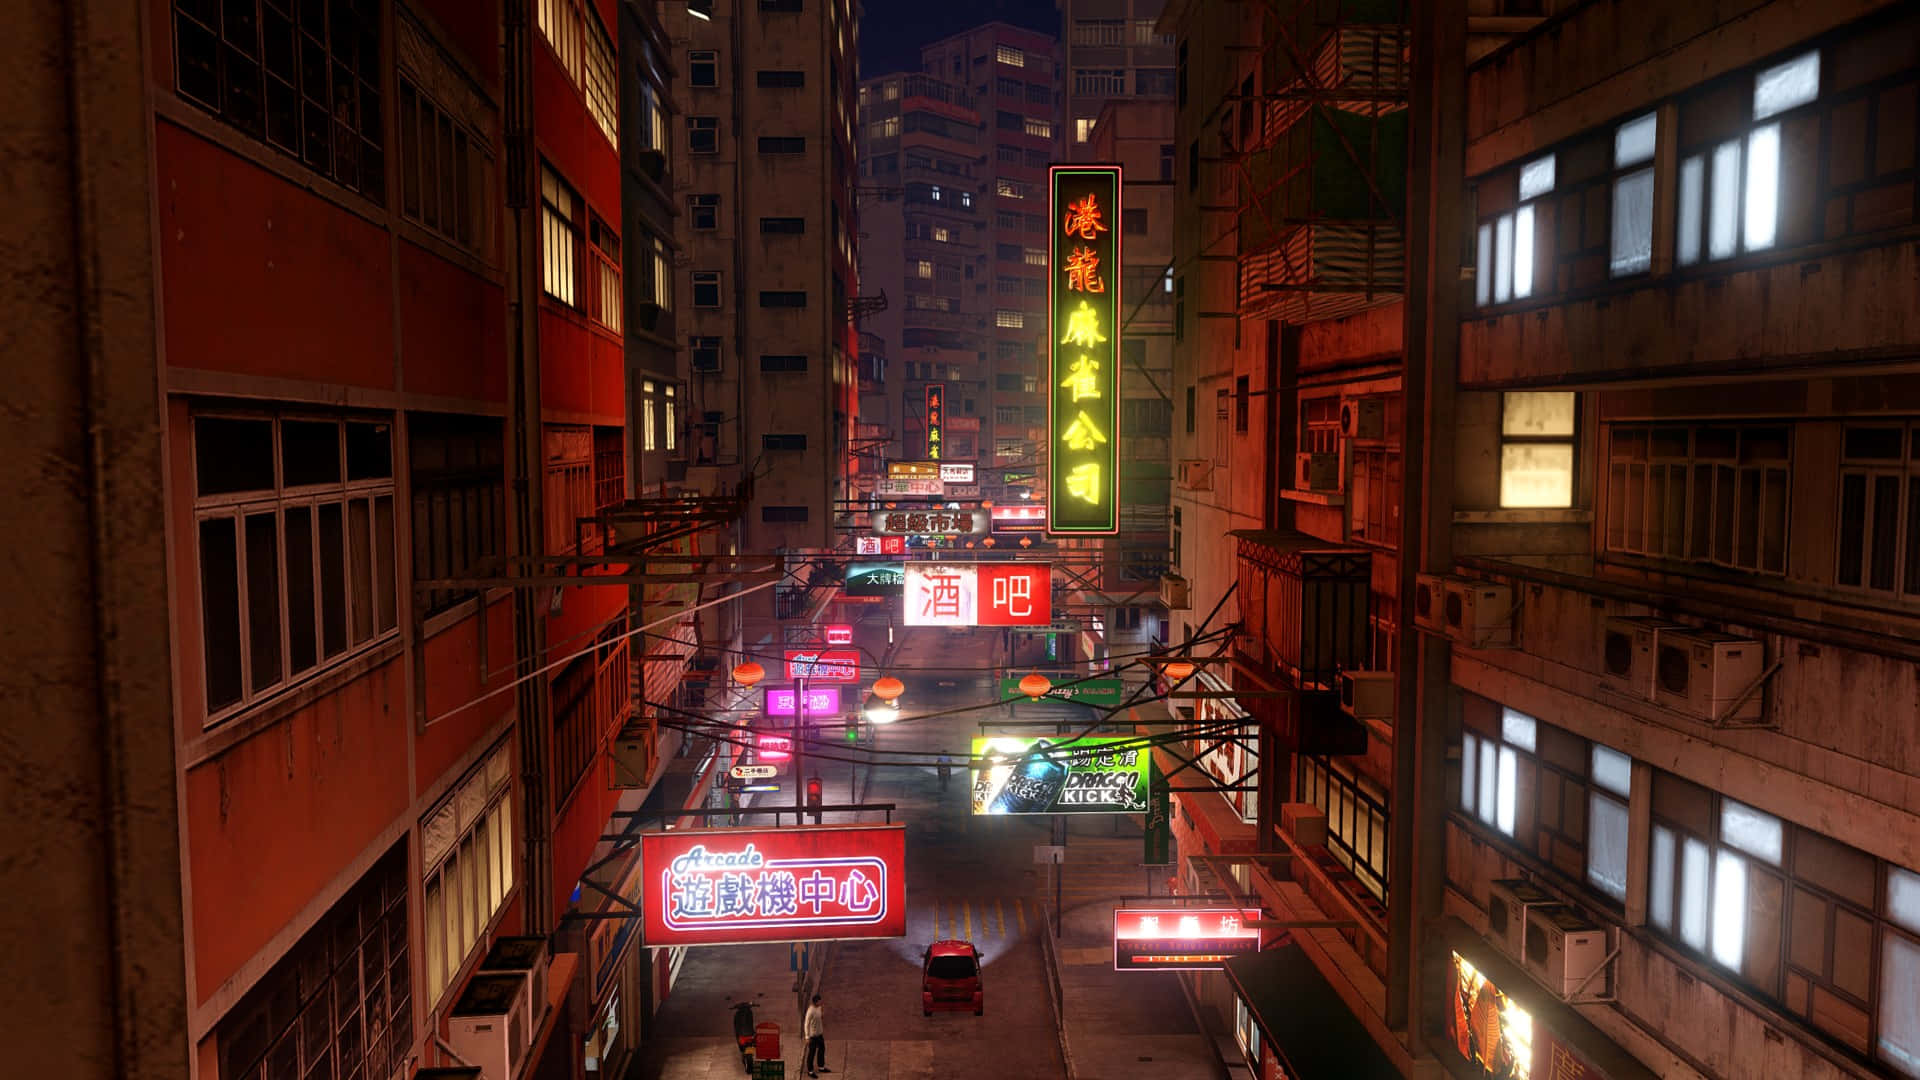 Migliorsfondo Di Sleeping Dogs: Segnaletica Al Neon Nella Strada Di Hong Kong.